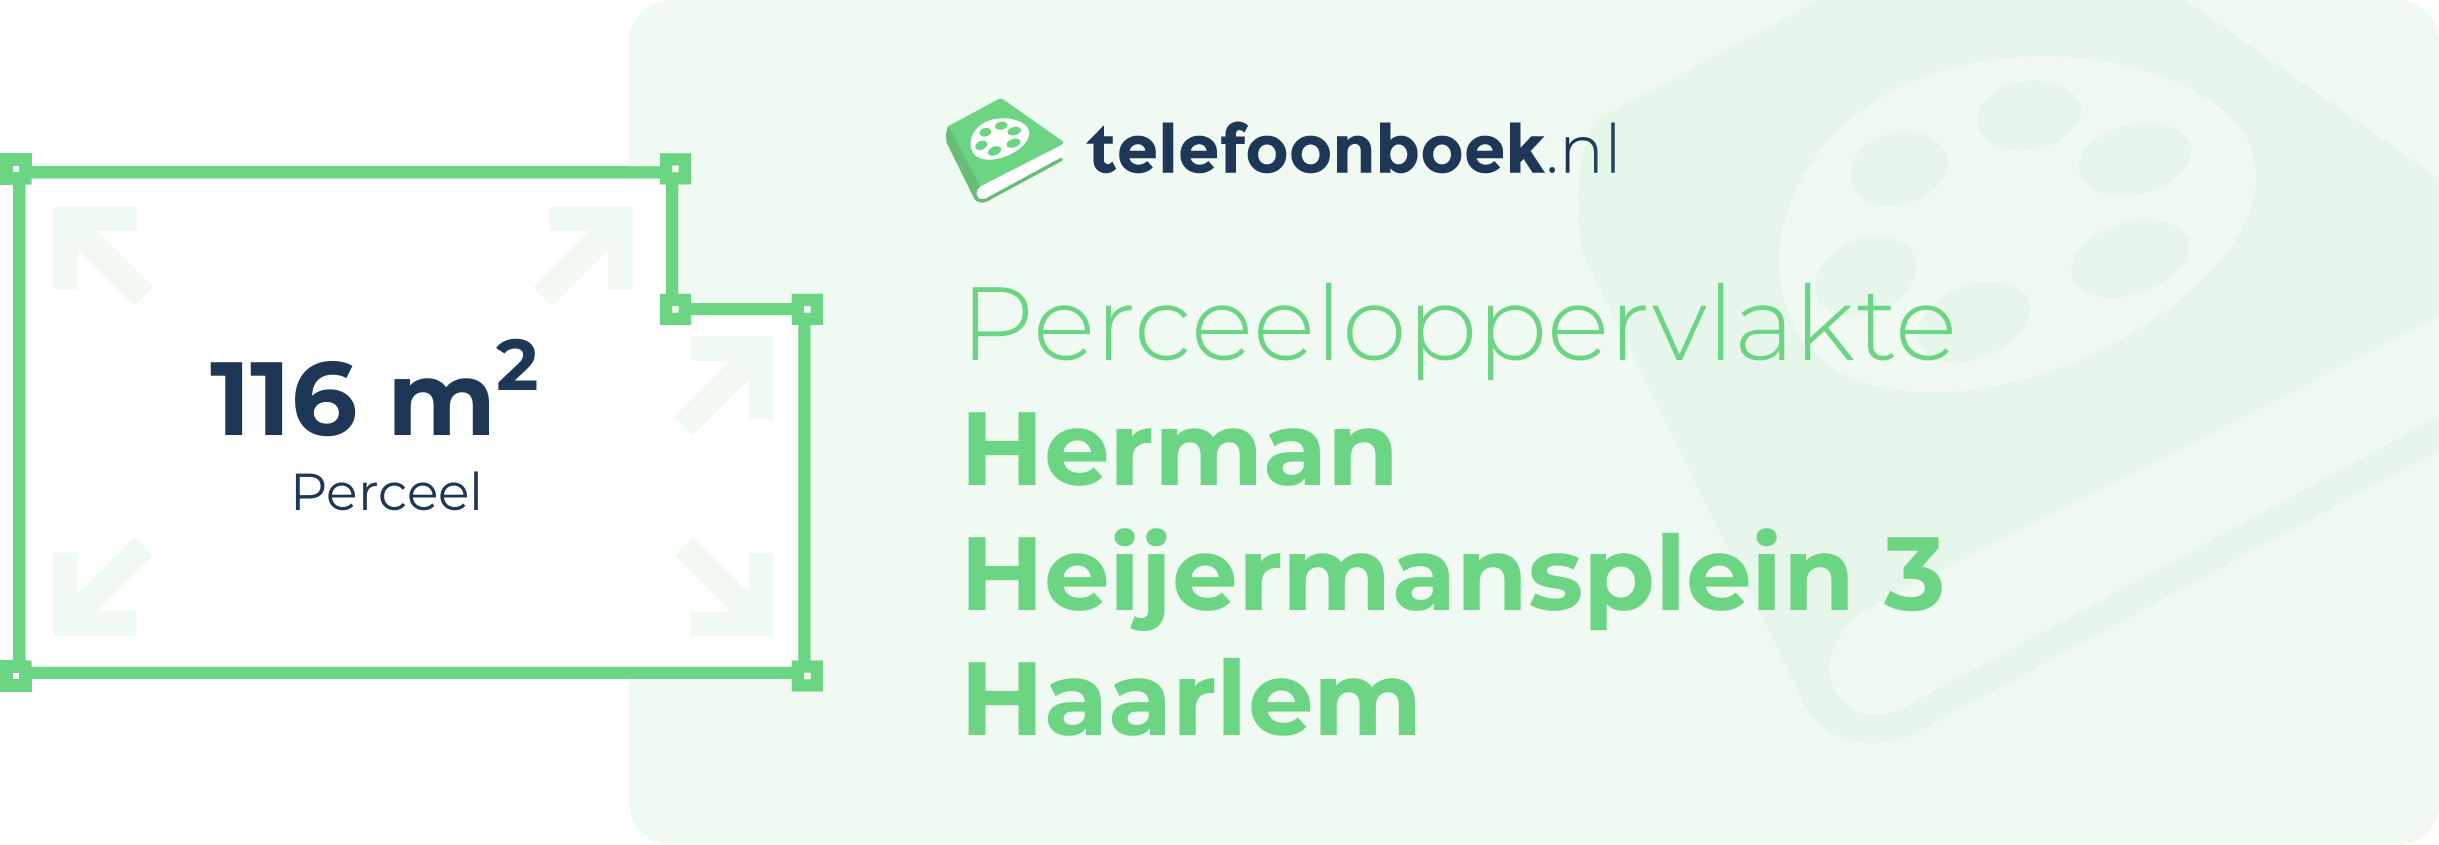 Perceeloppervlakte Herman Heijermansplein 3 Haarlem